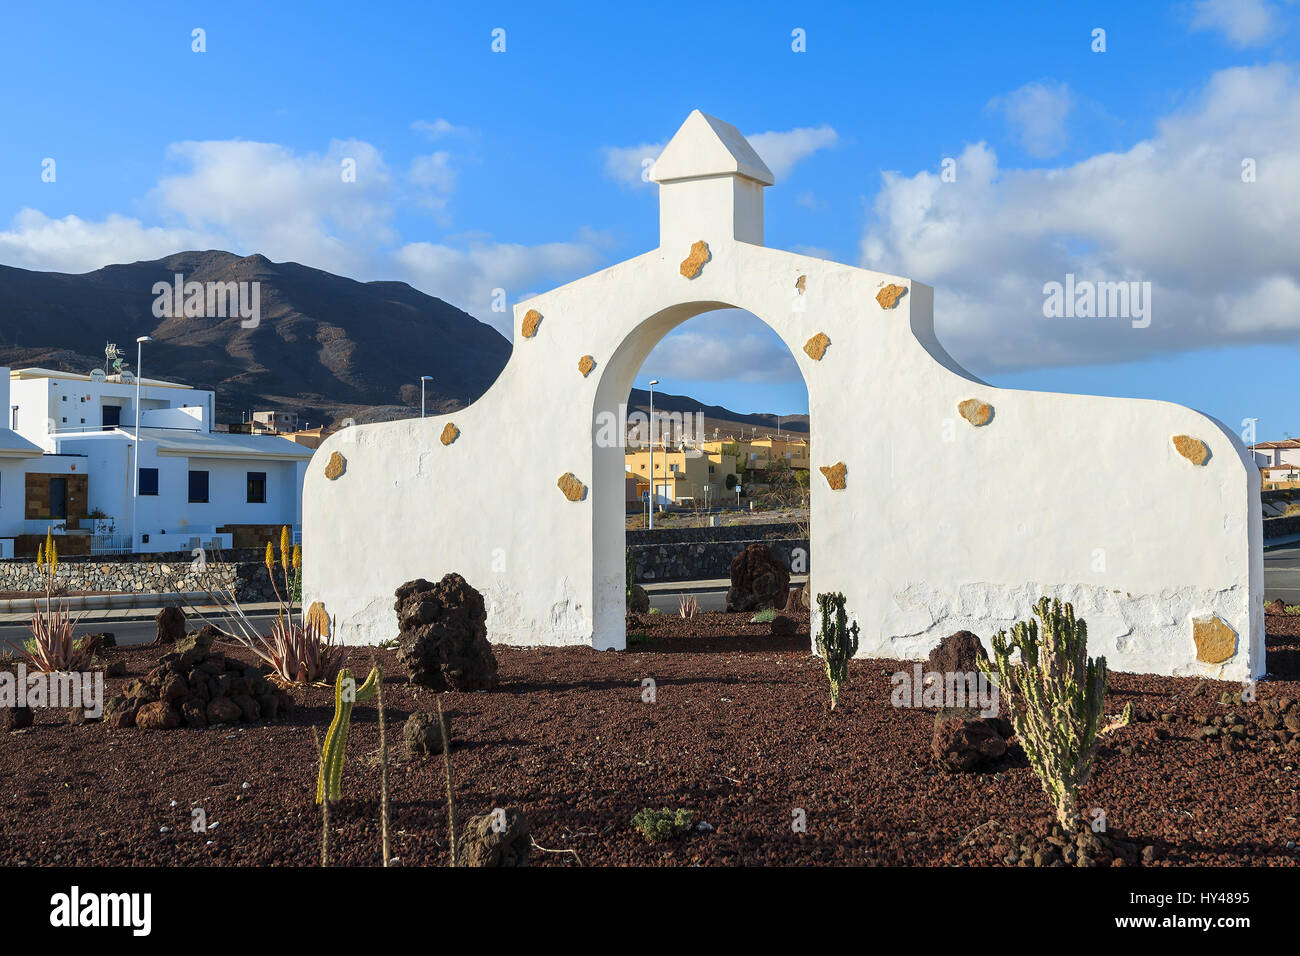 Typische Gemeinde melden (weißes Tor Bogens) in Gran Tarajal Dorf mit Wüstenlandschaft im Hintergrund, Fuerteventura, Kanarische Inseln, Spanien Stockfoto